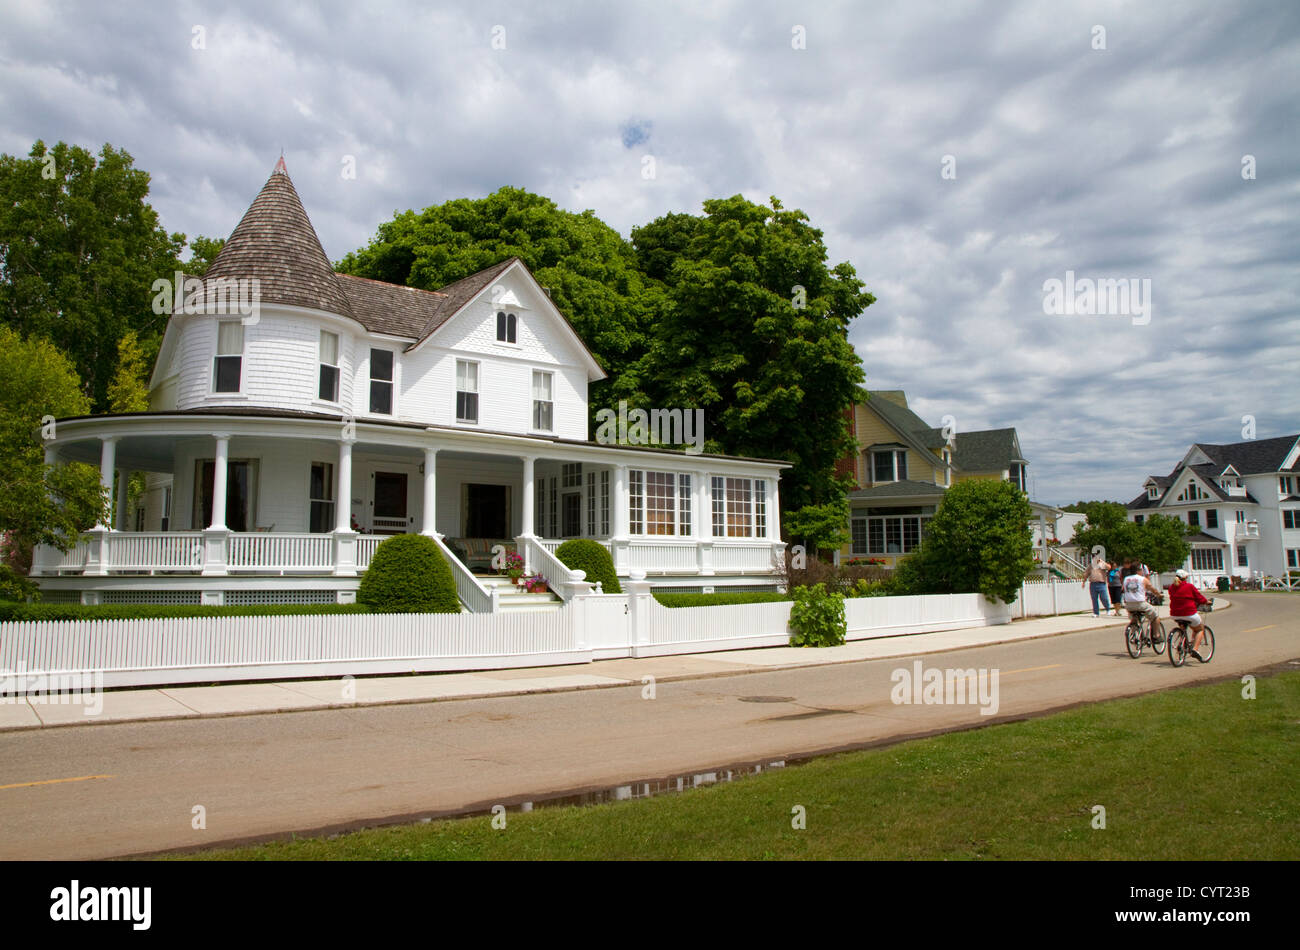 Maison historique sur l'île Mackinac situé dans le lac Huron, Michigan, USA. Banque D'Images